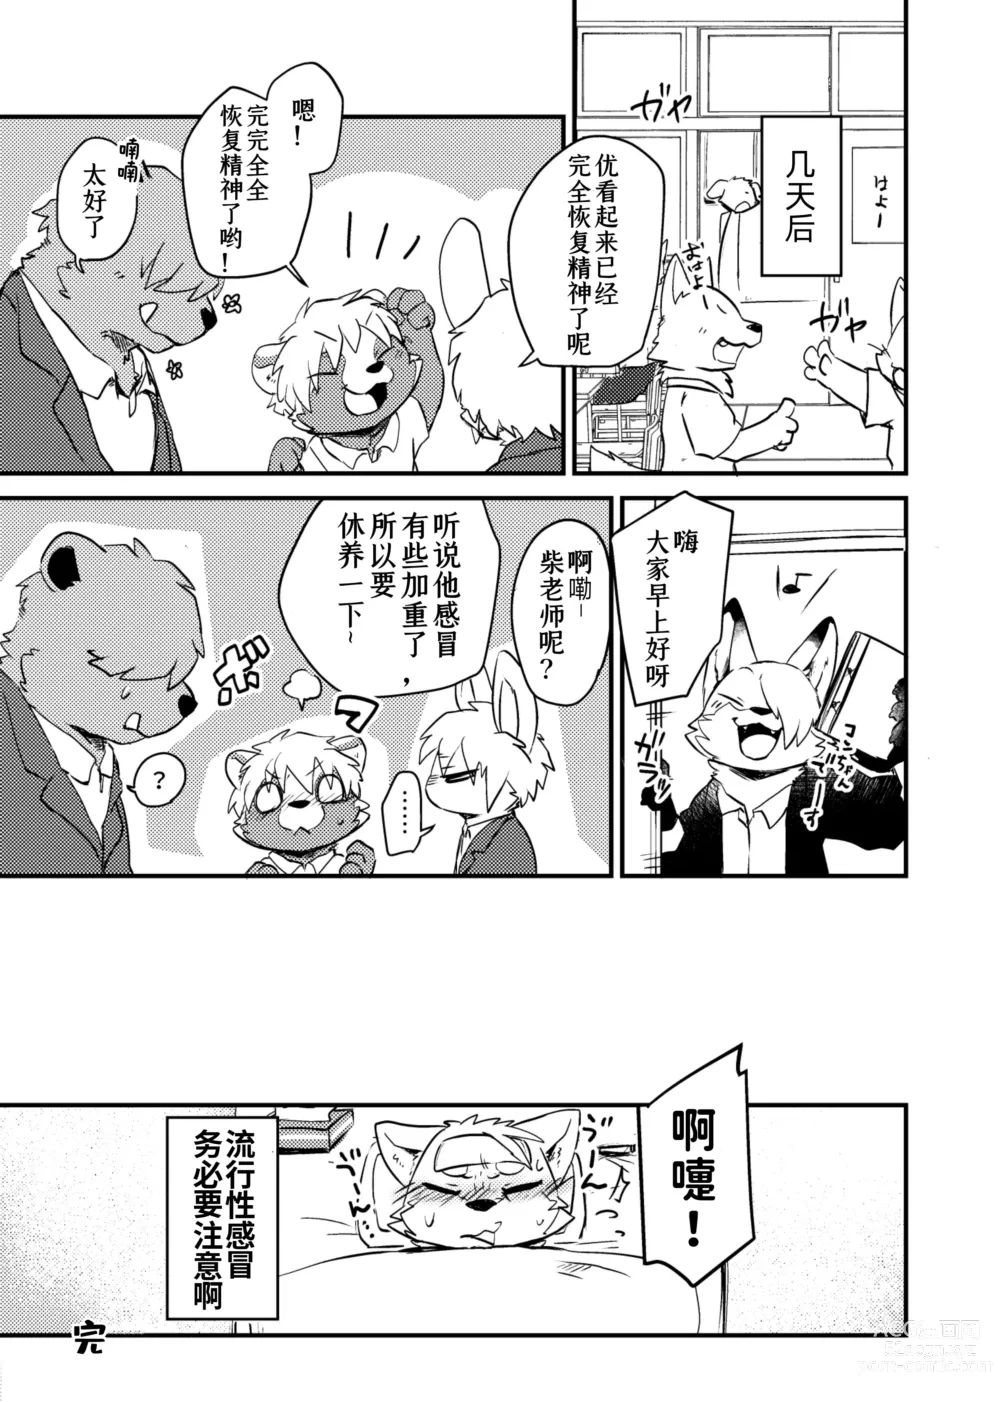 Page 33 of doujinshi 老师和我。流行性感冒务必要注意哦！？